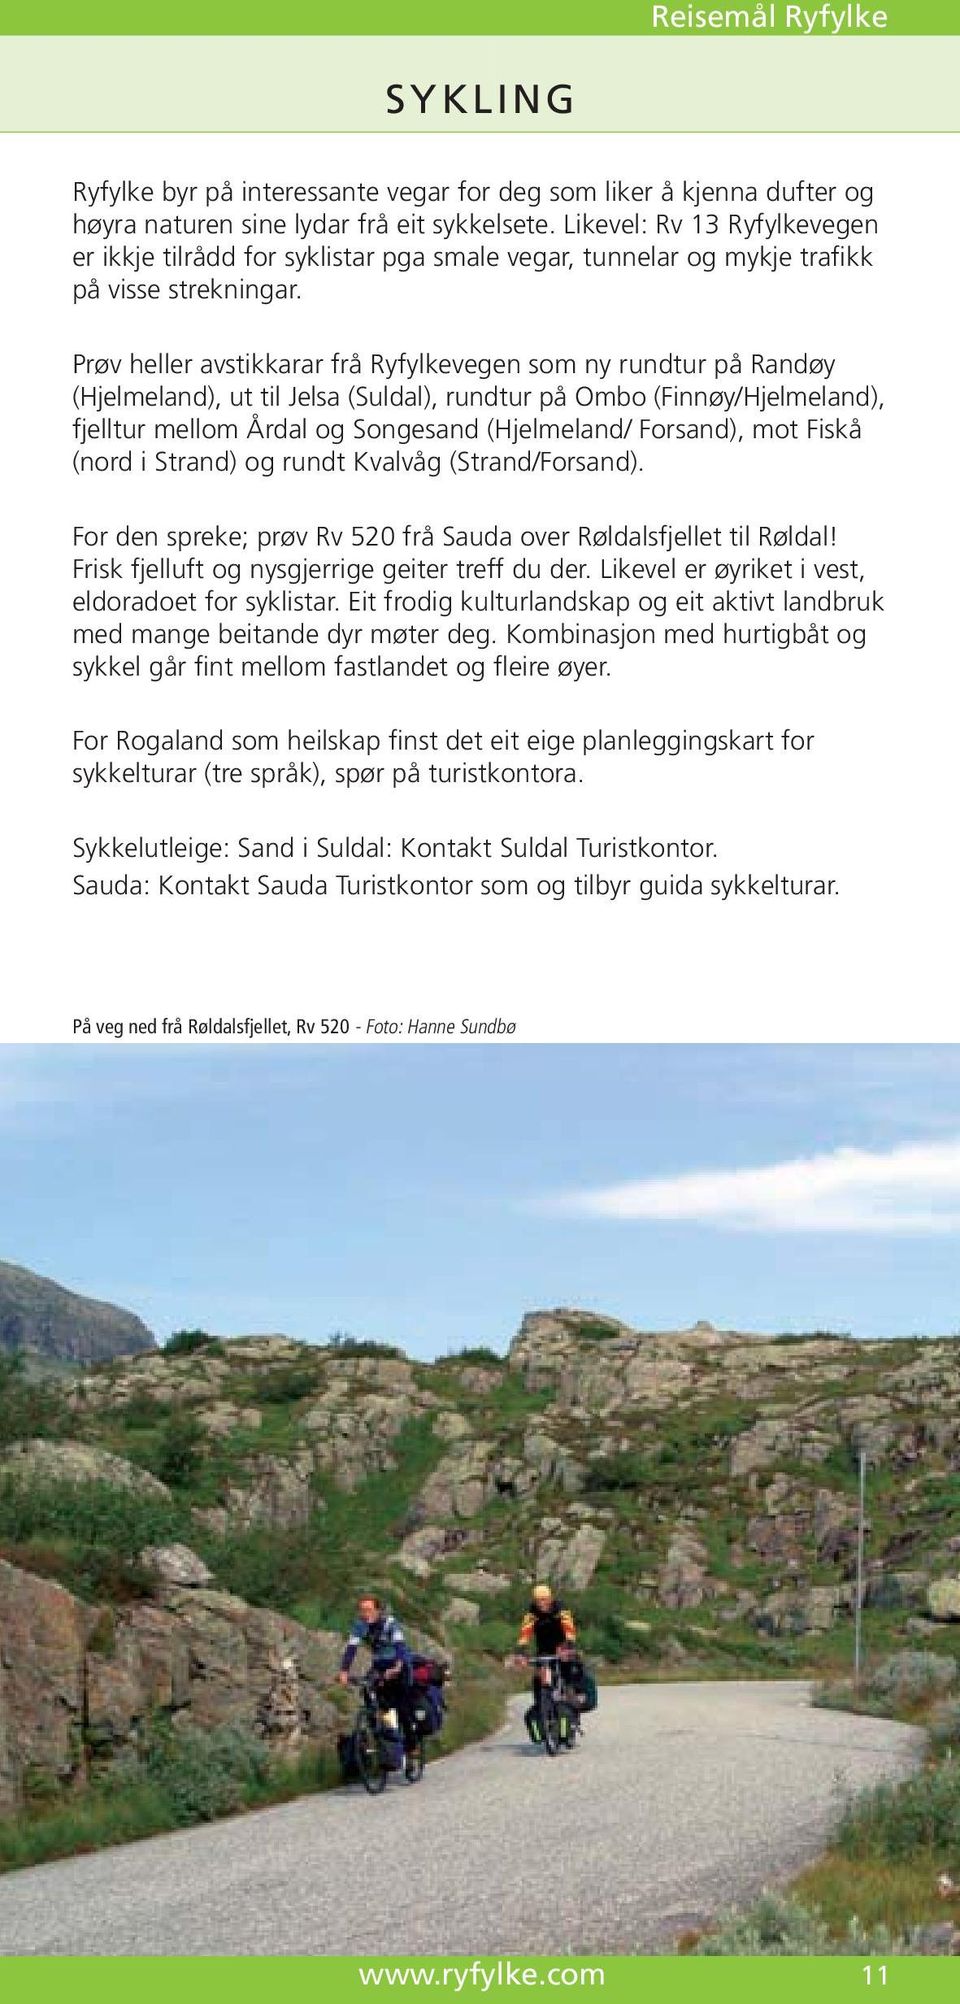 Prøv heller avstikkarar frå Ryfylkevegen som ny rundtur på Randøy (Hjelmeland), ut til Jelsa (Suldal), rundtur på Ombo (Finnøy/Hjelmeland), fjelltur mellom Årdal og Songesand (Hjelmeland/ Forsand),